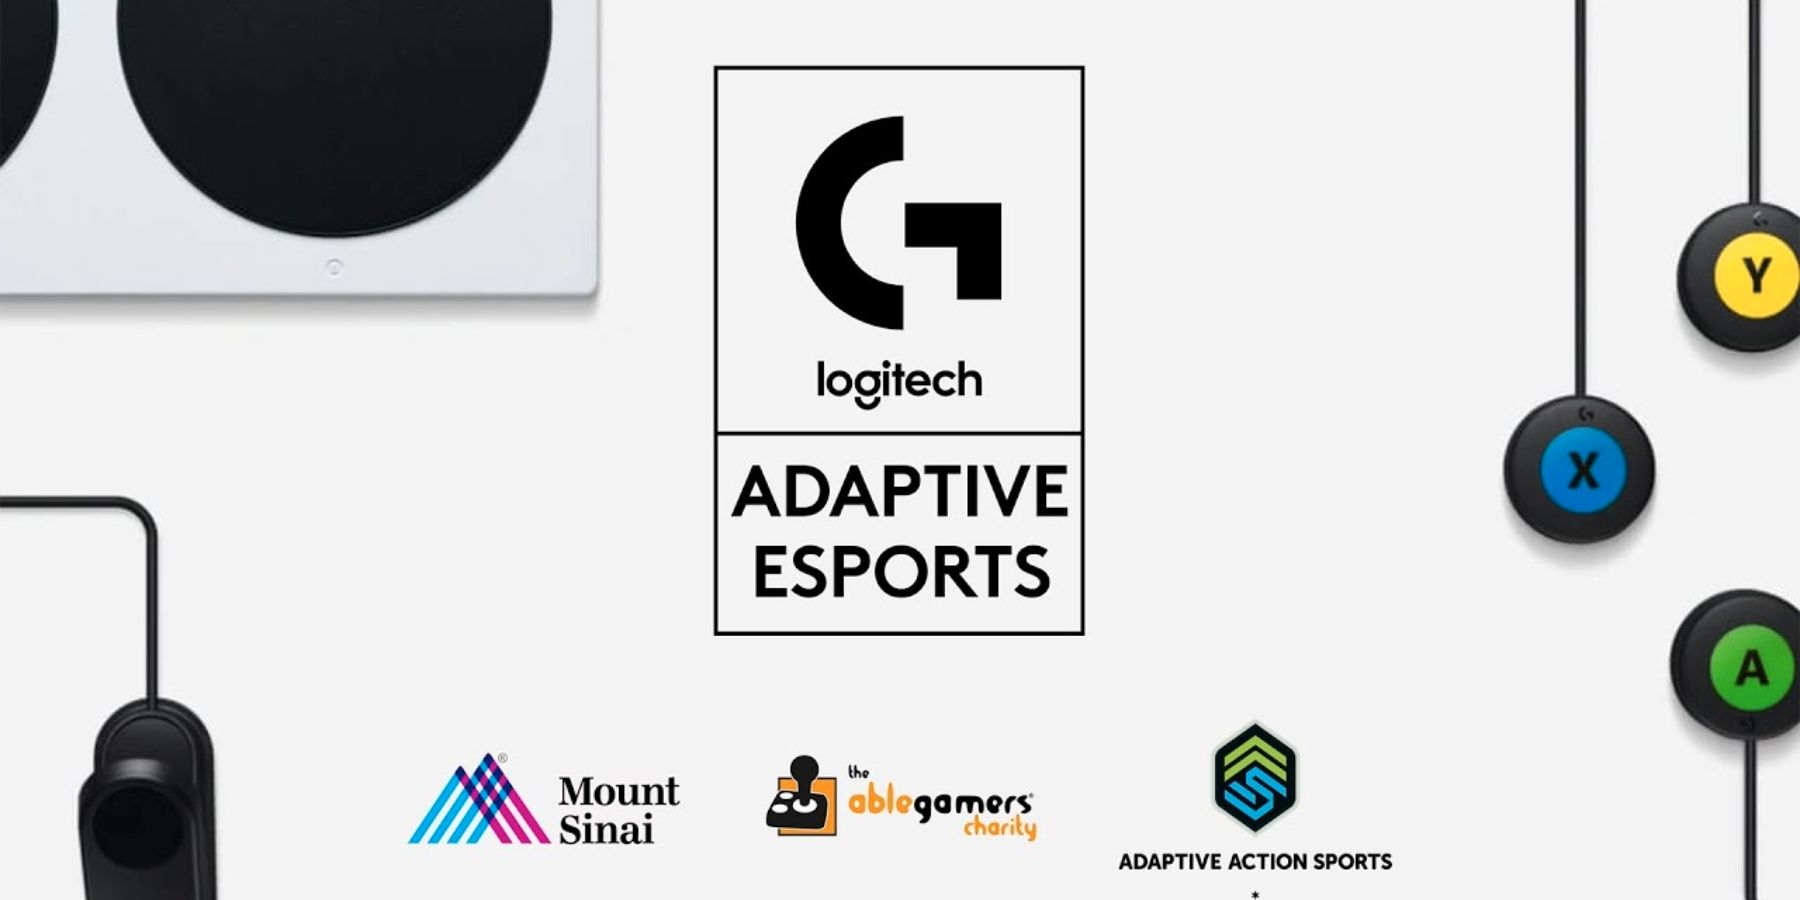 A Logitech G fogadja a fogyatékkal élő játékosok adaptív sportversenyét